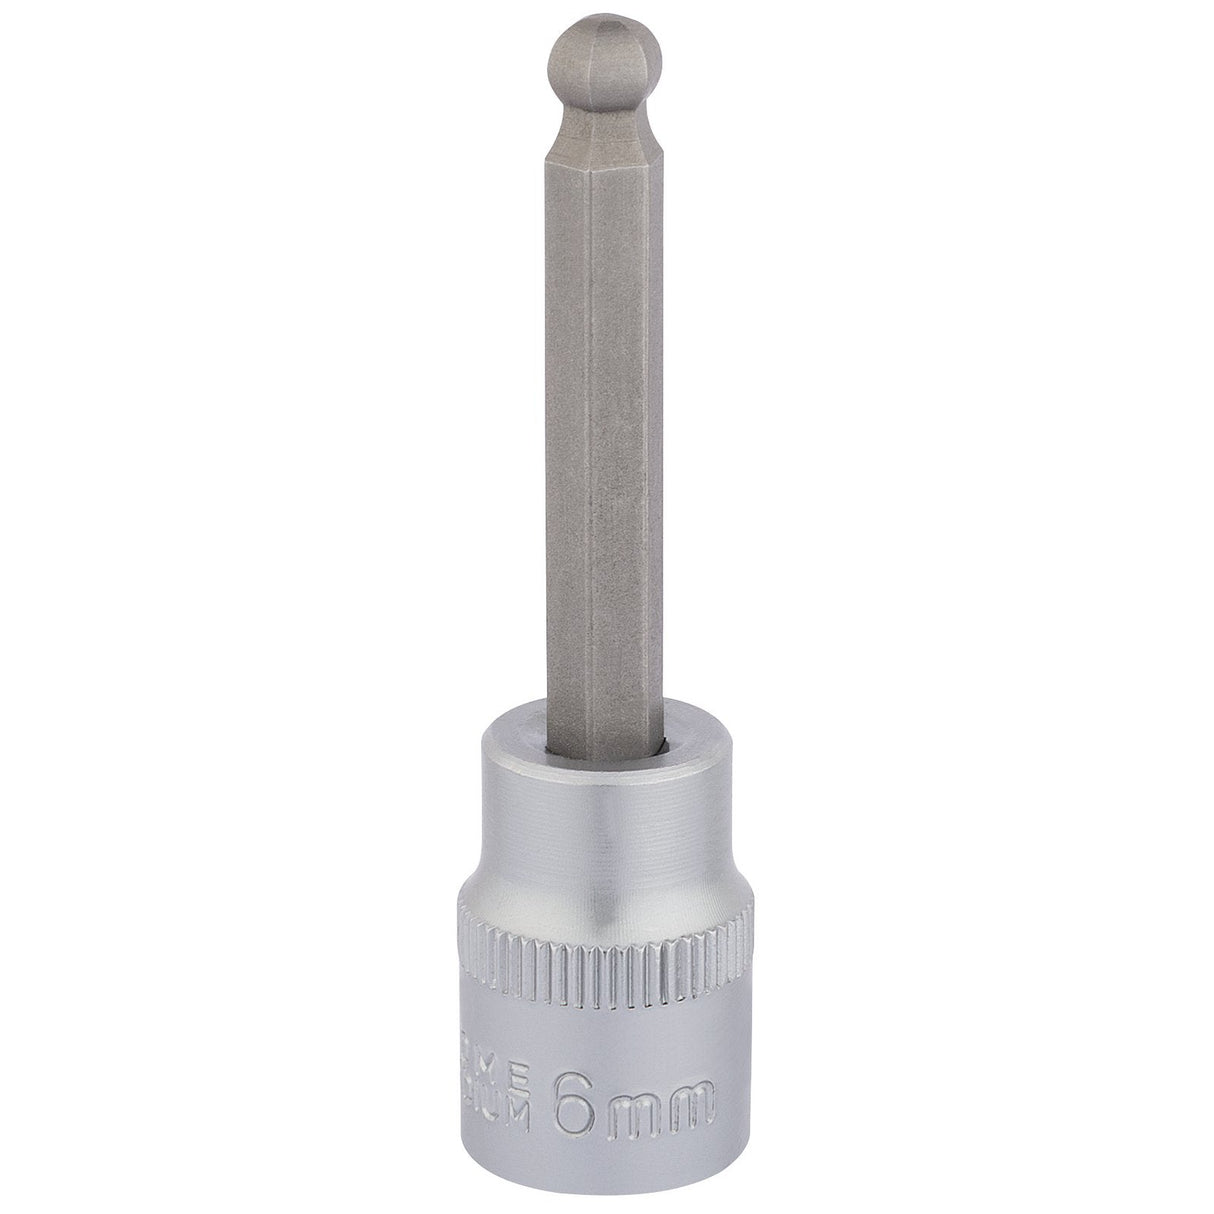 Draper Ball End Hexagonal Socket Bits, 3/8" Sq. Dr., 6mm - D-HEX-BALL/B - Farming Parts